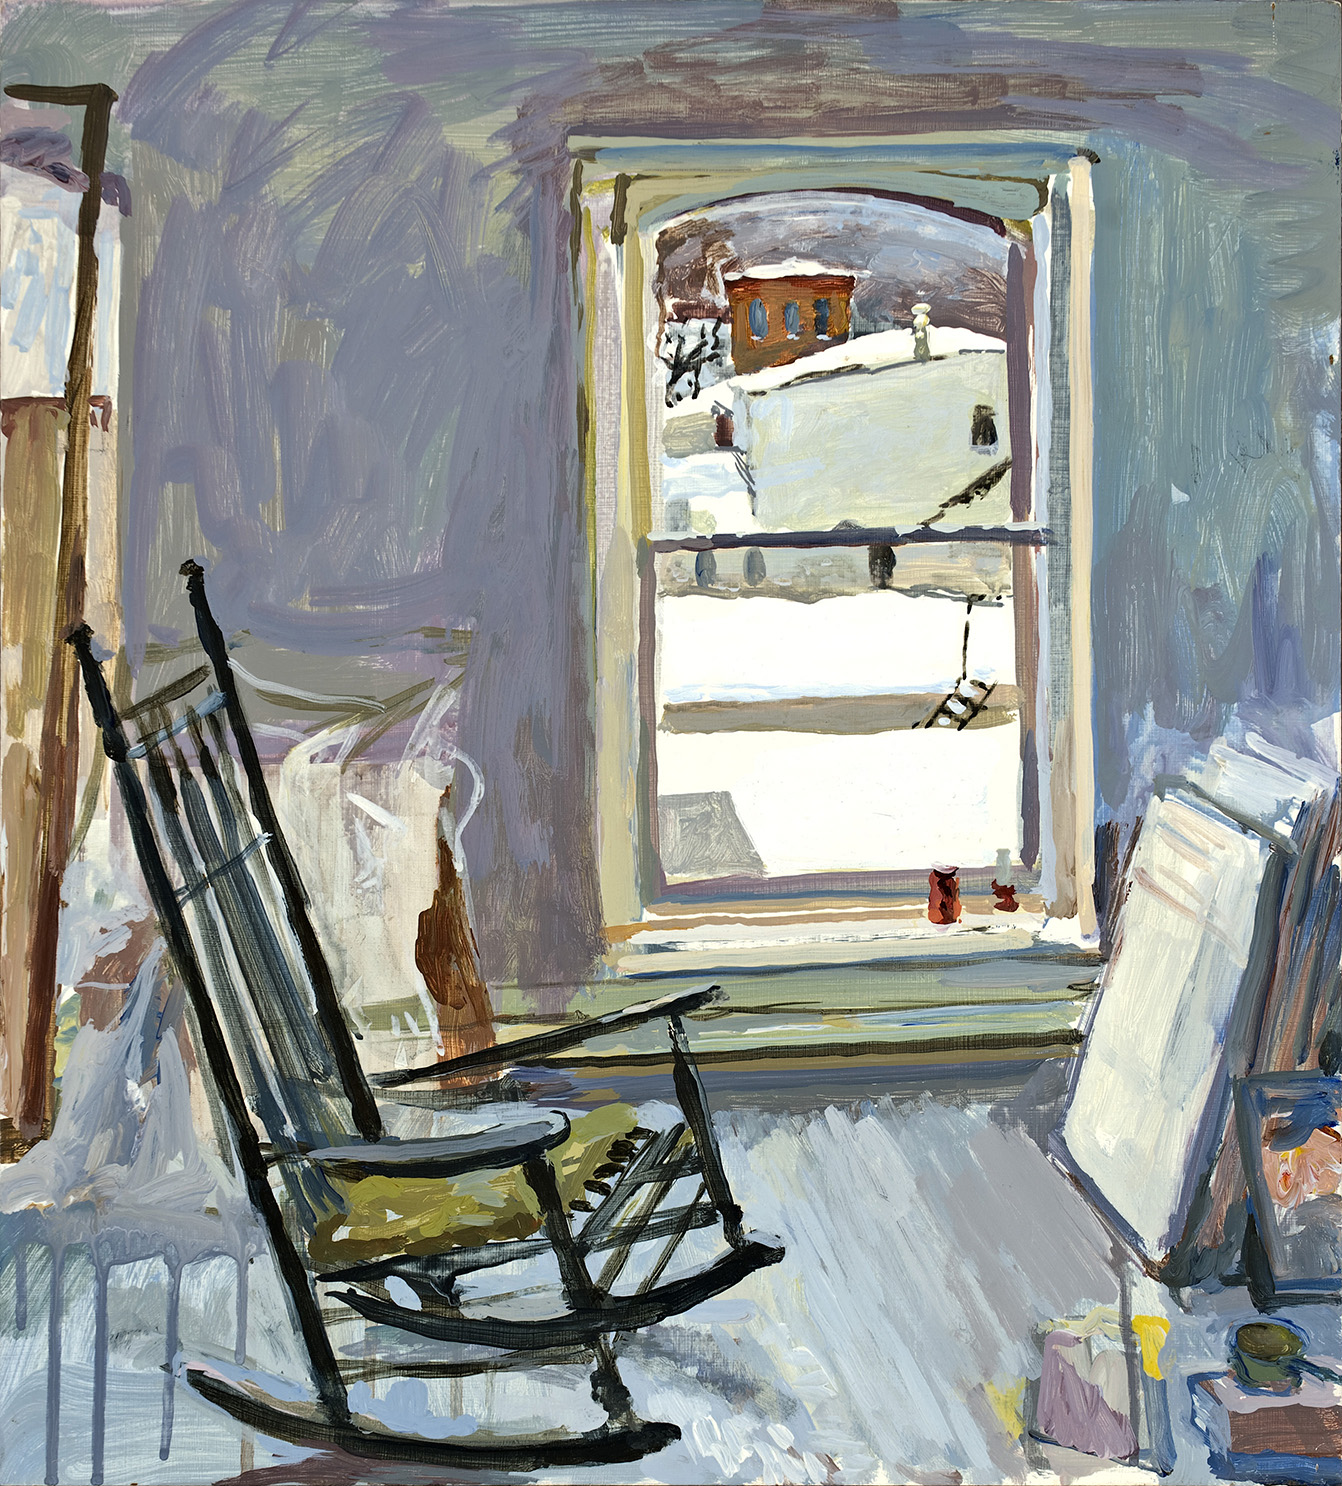  Winter Window; oil on board, 20 x 18